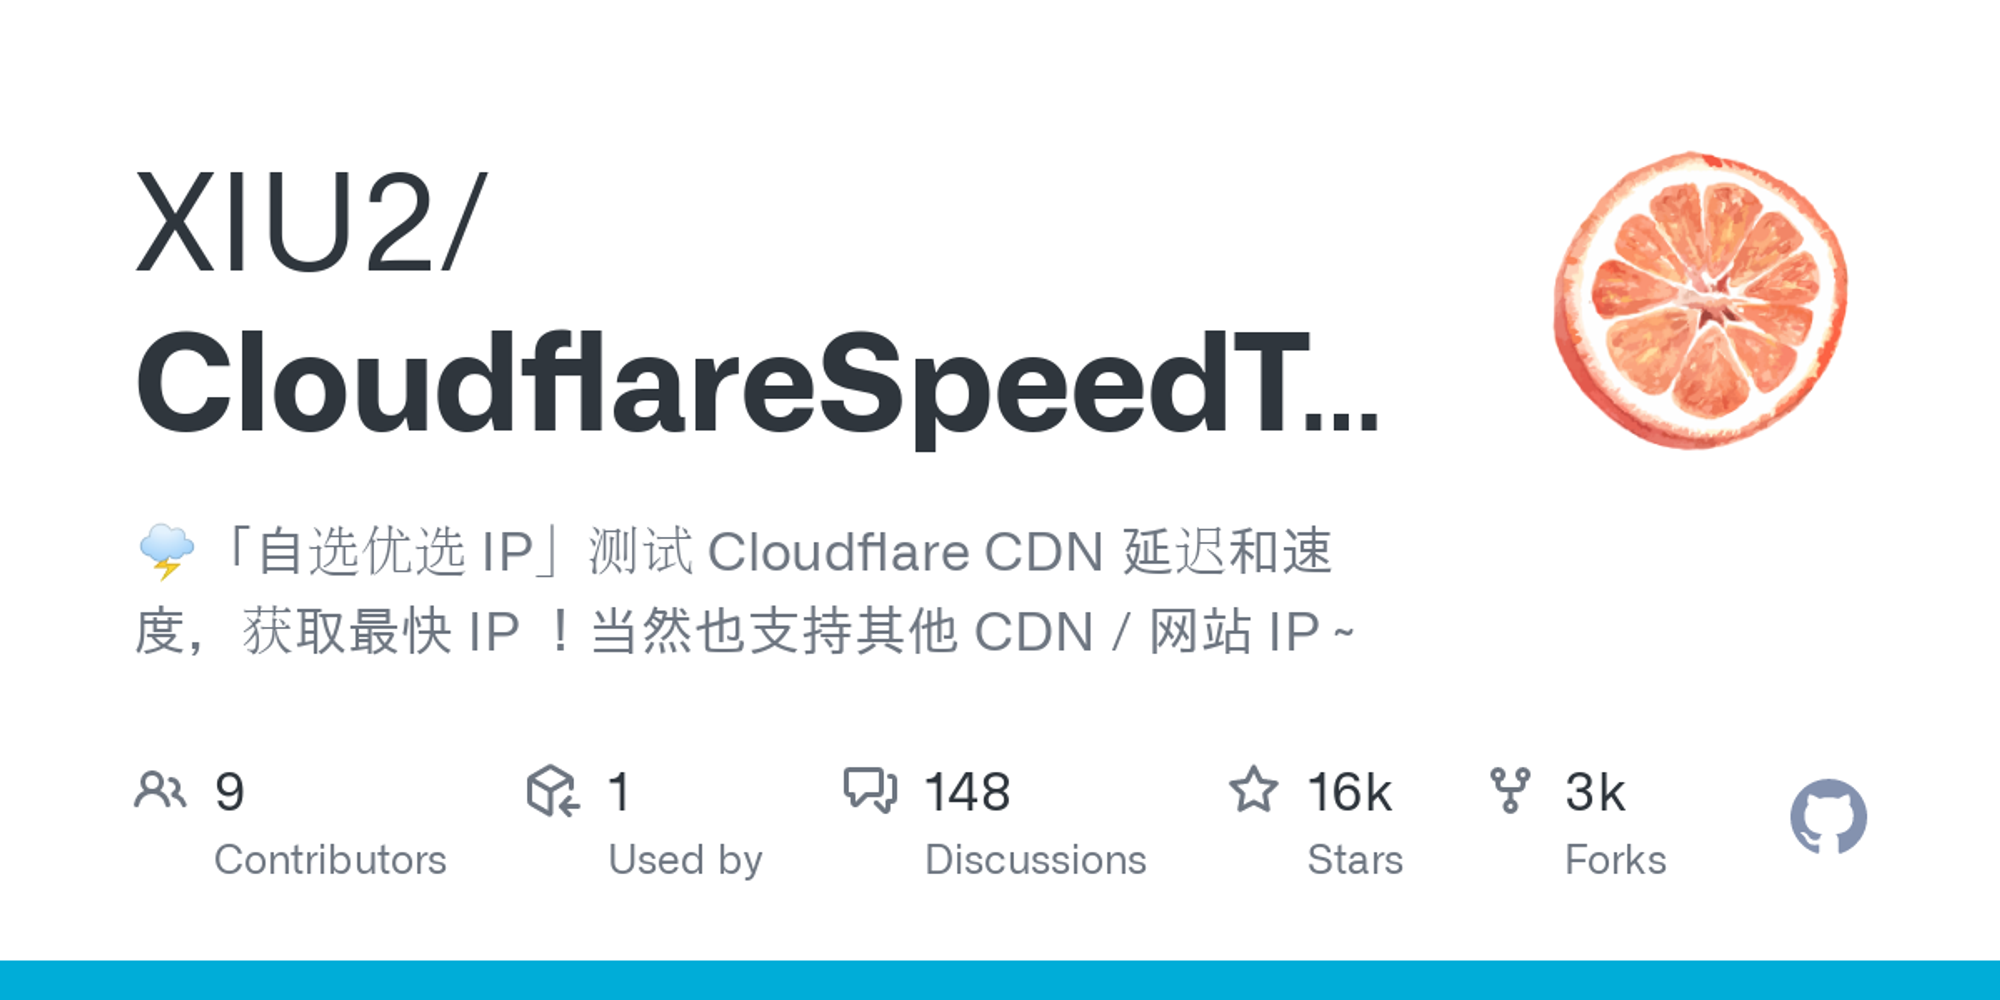 XIU2/CloudflareSpeedTest